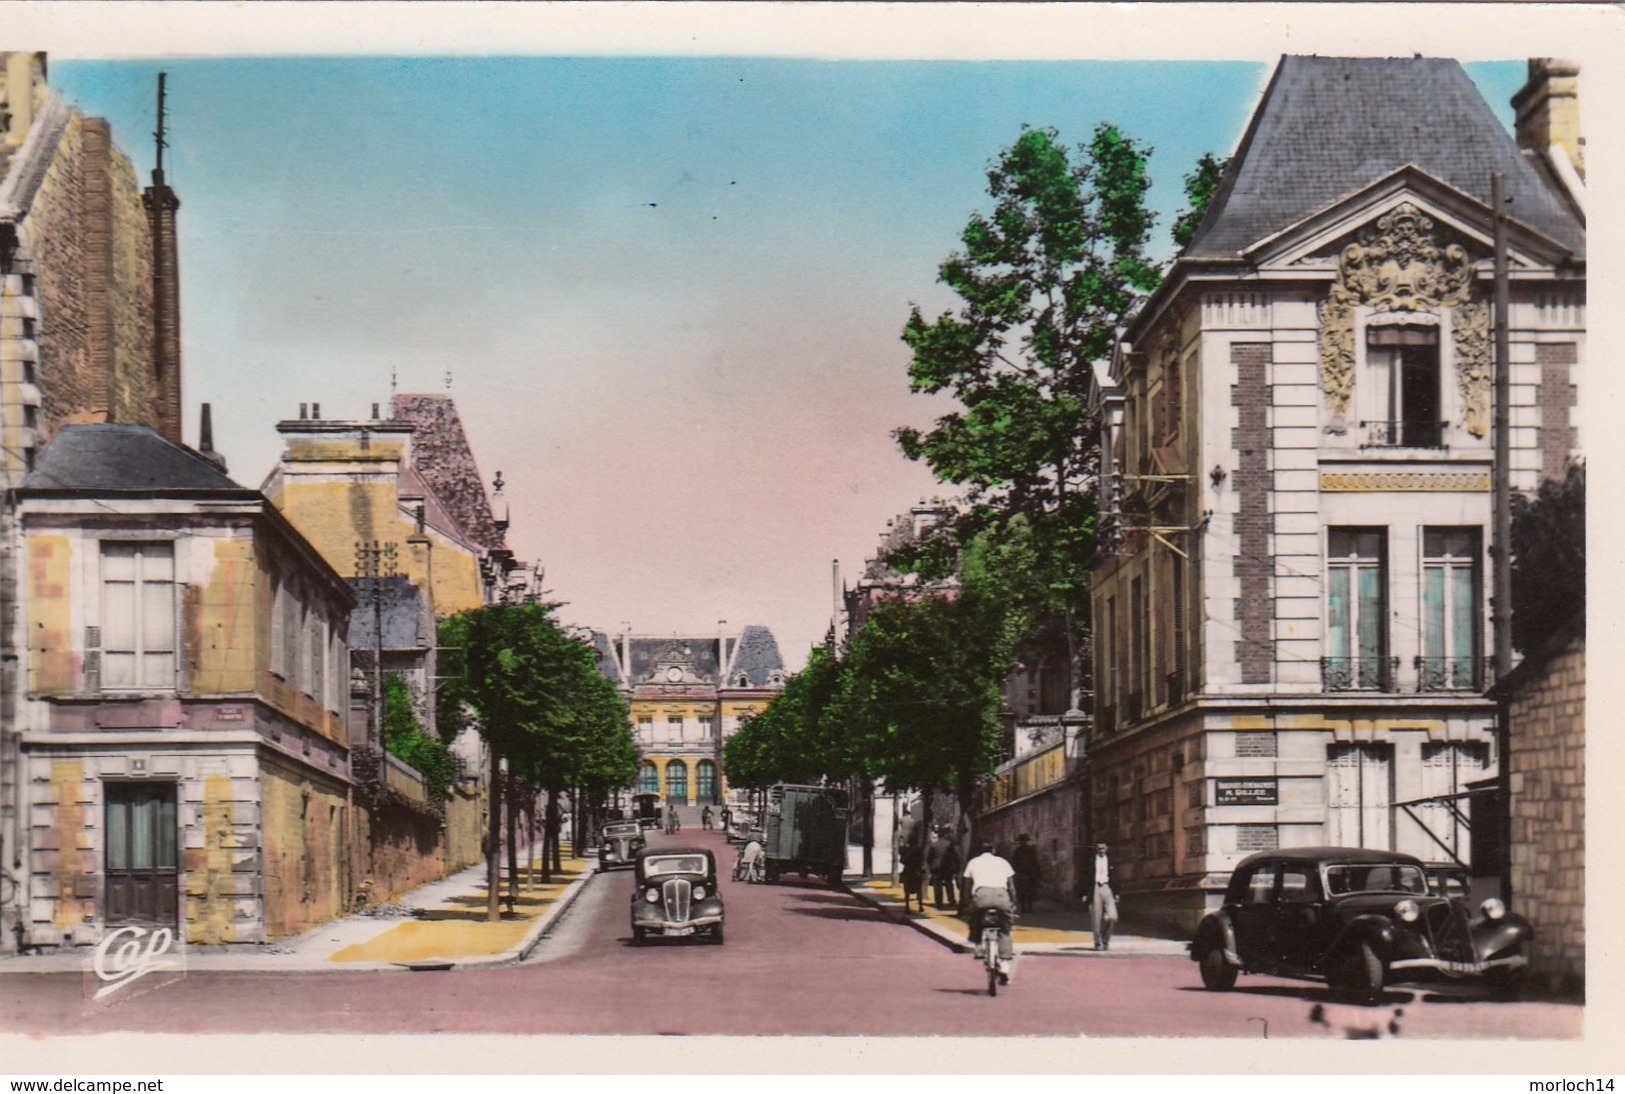 CAEN : Avenue De Courseulles - Caen